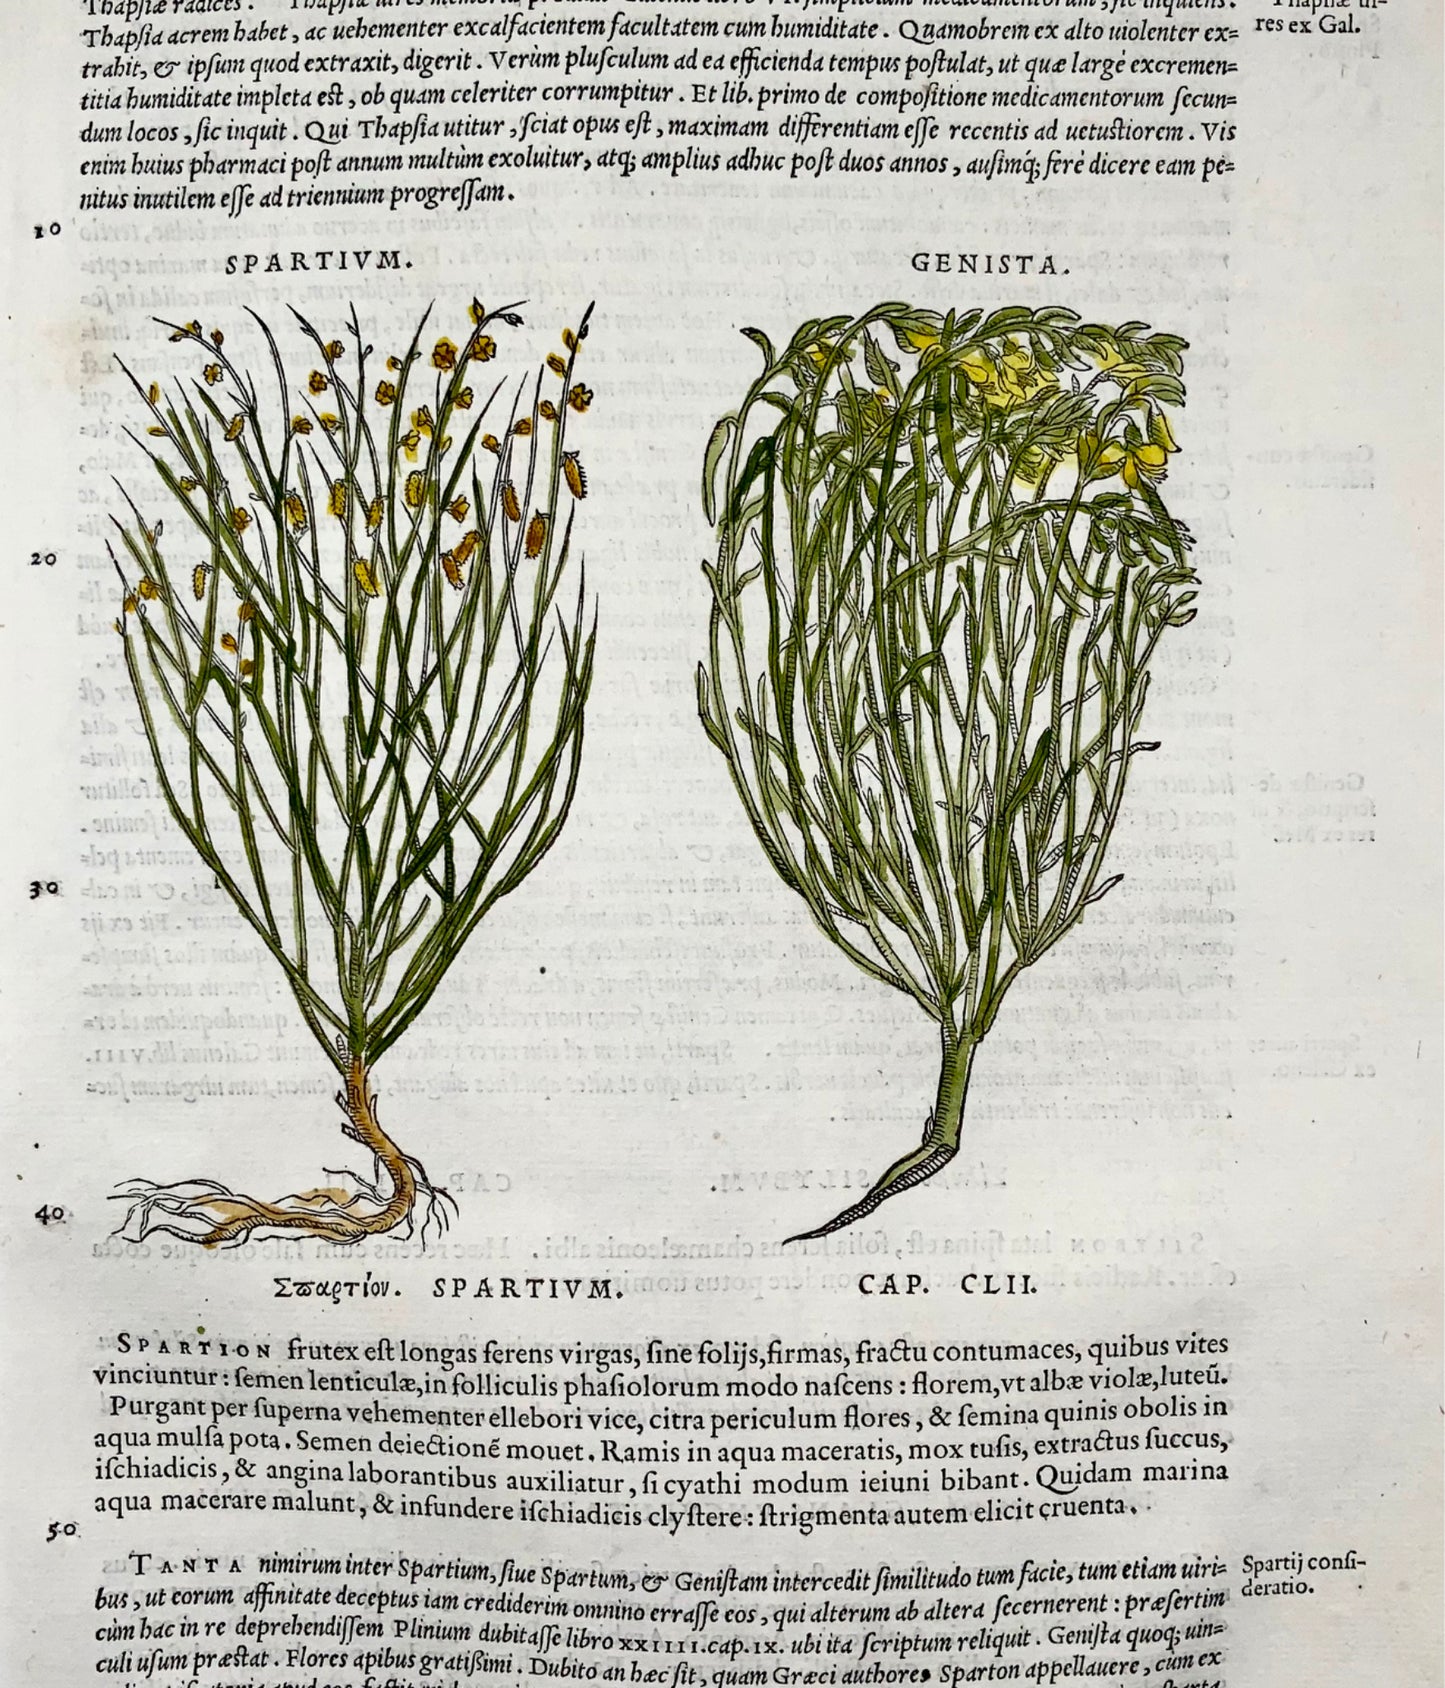 1554 Broom, Genista, Mattioli Folio Woodcut, 1st illustrated edn, botany